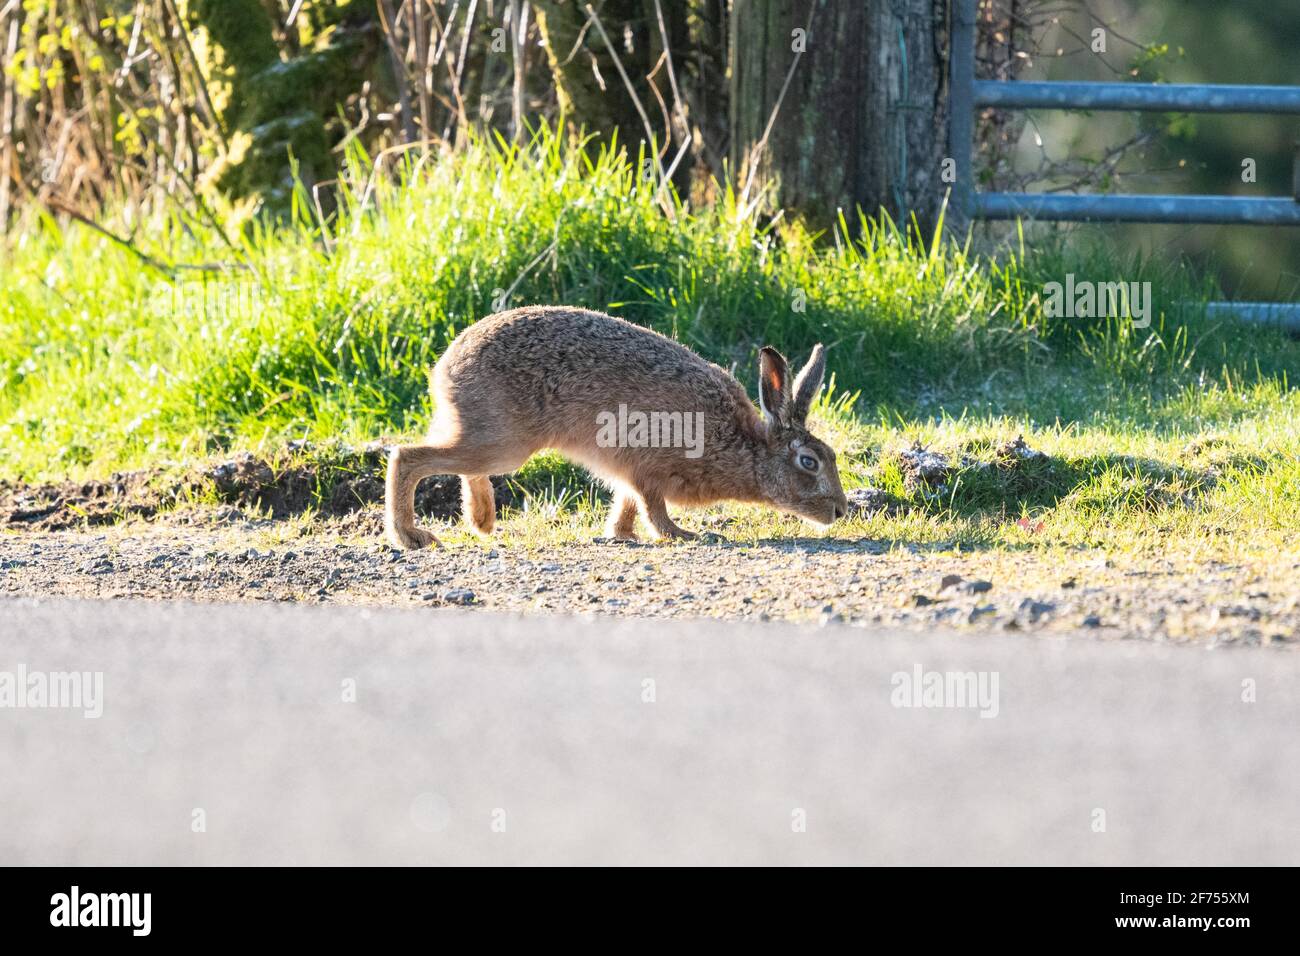 Brauner Hase (männlich) - lepus europaeus - Nase bis zum Boden nach dem Duft eines Weibchens während der Brutsaison - Schottland, Großbritannien Stockfoto